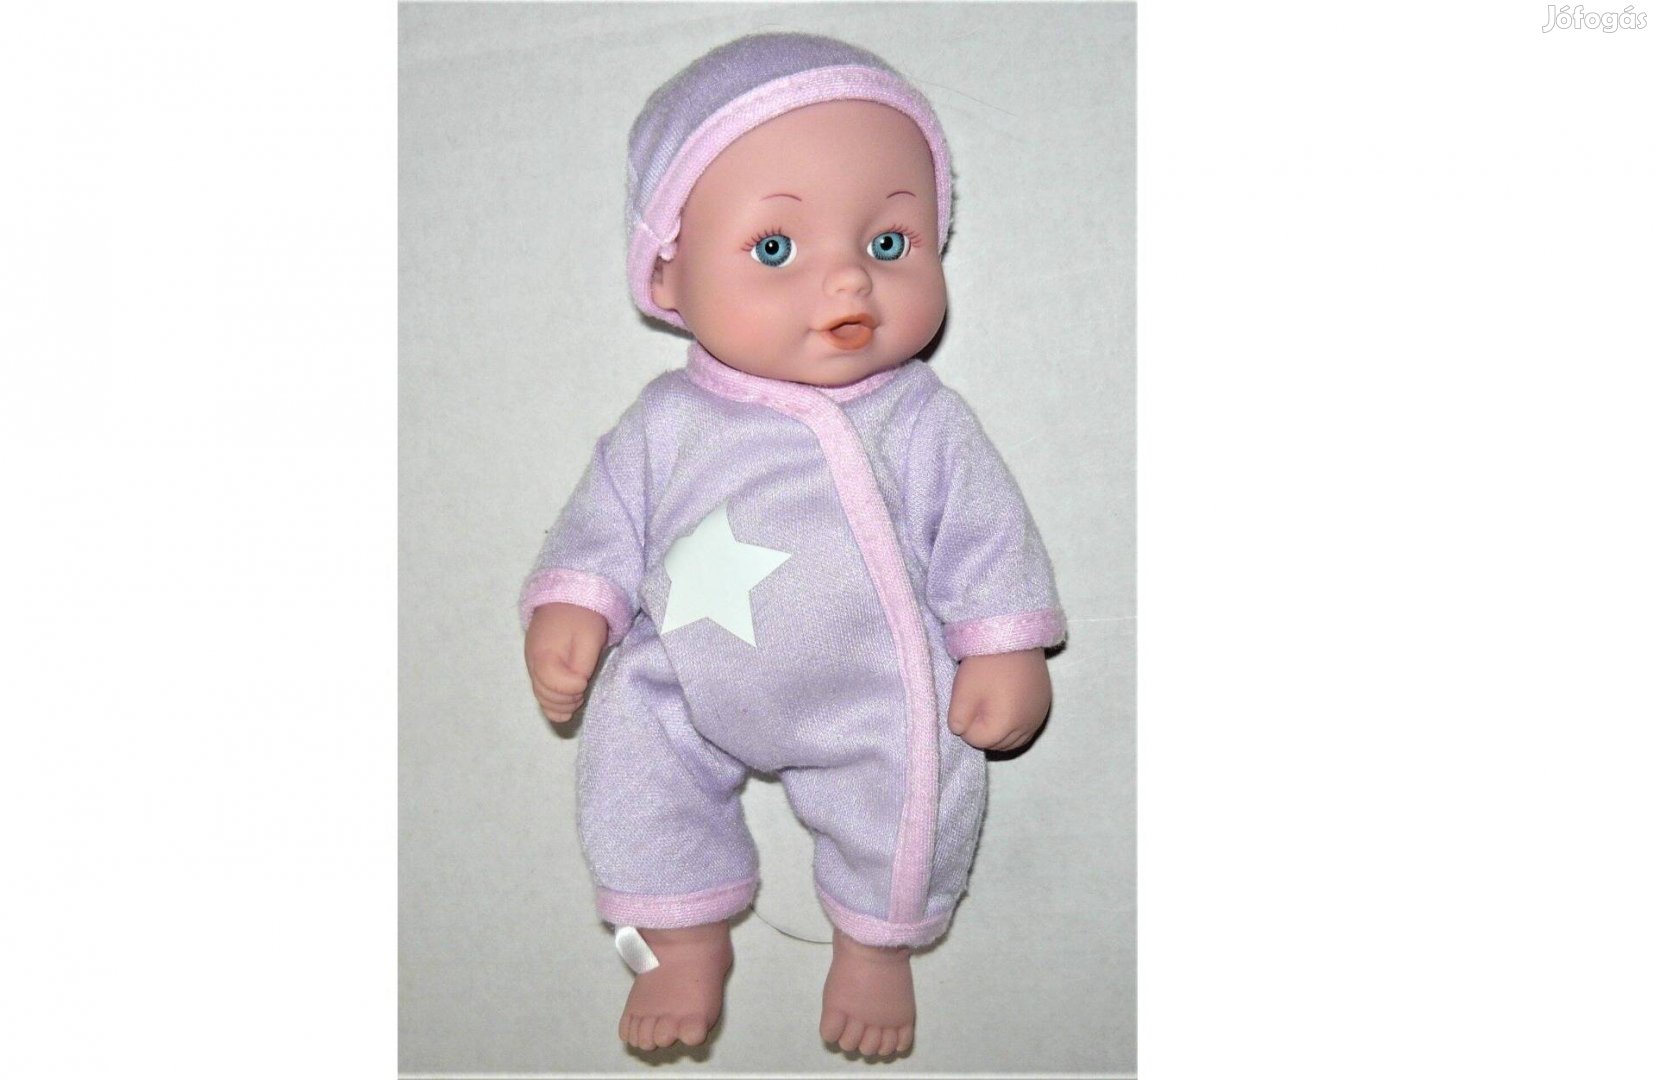 Kicsi Cititoy jelzésű csecsemő baba - 2003 - fürdethető